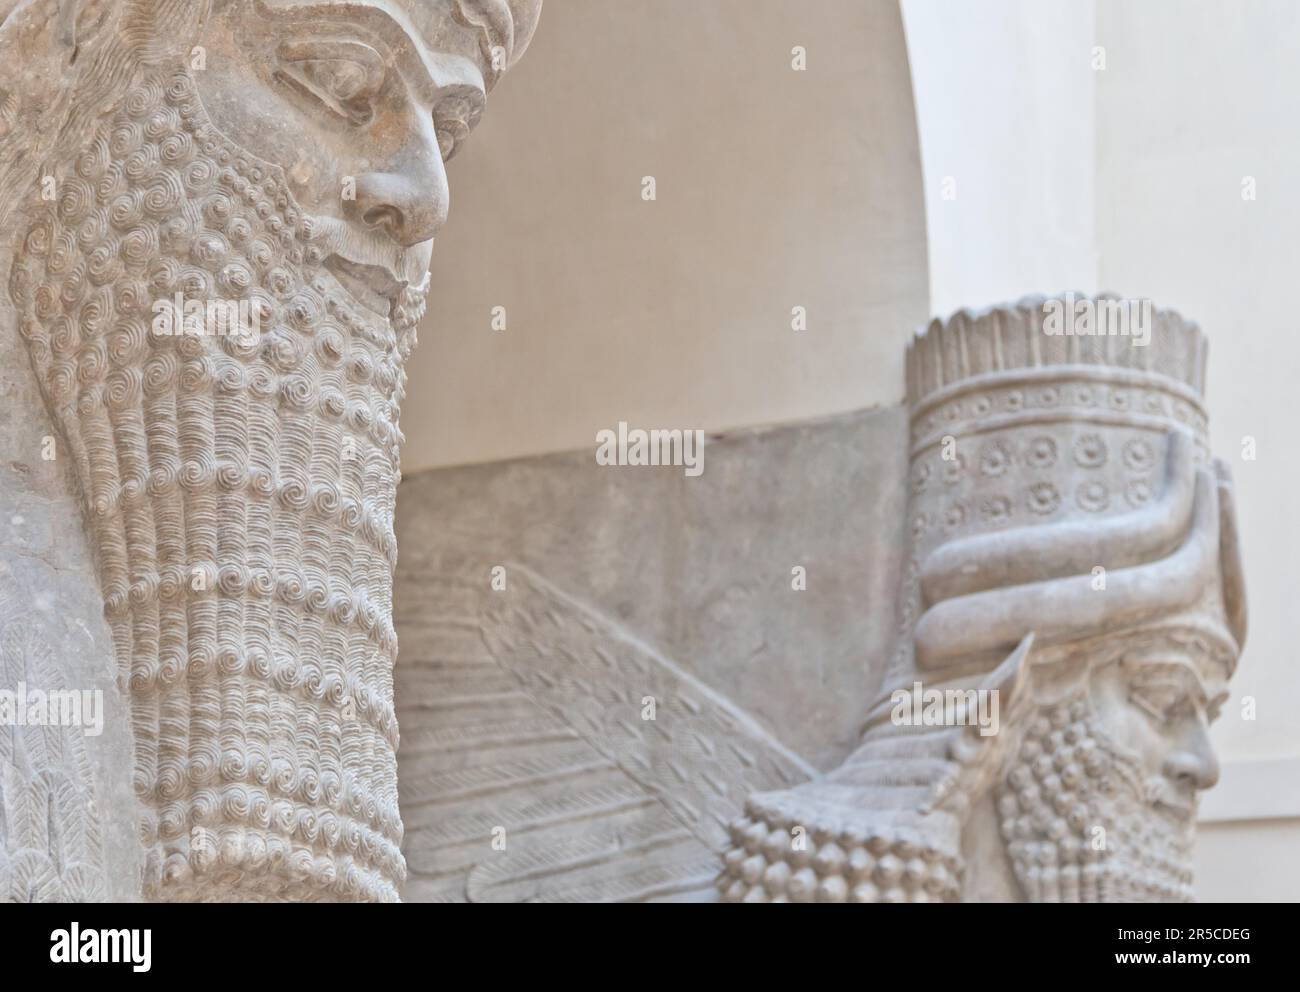 Bis 3500 v. Chr. zurückreicht, mesopotamische Kunst Krieg als eine Möglichkeit, mächtige Herrscher und ihre Verbindung zur Göttlichkeit zu verherrlichen dienen soll Stockfoto